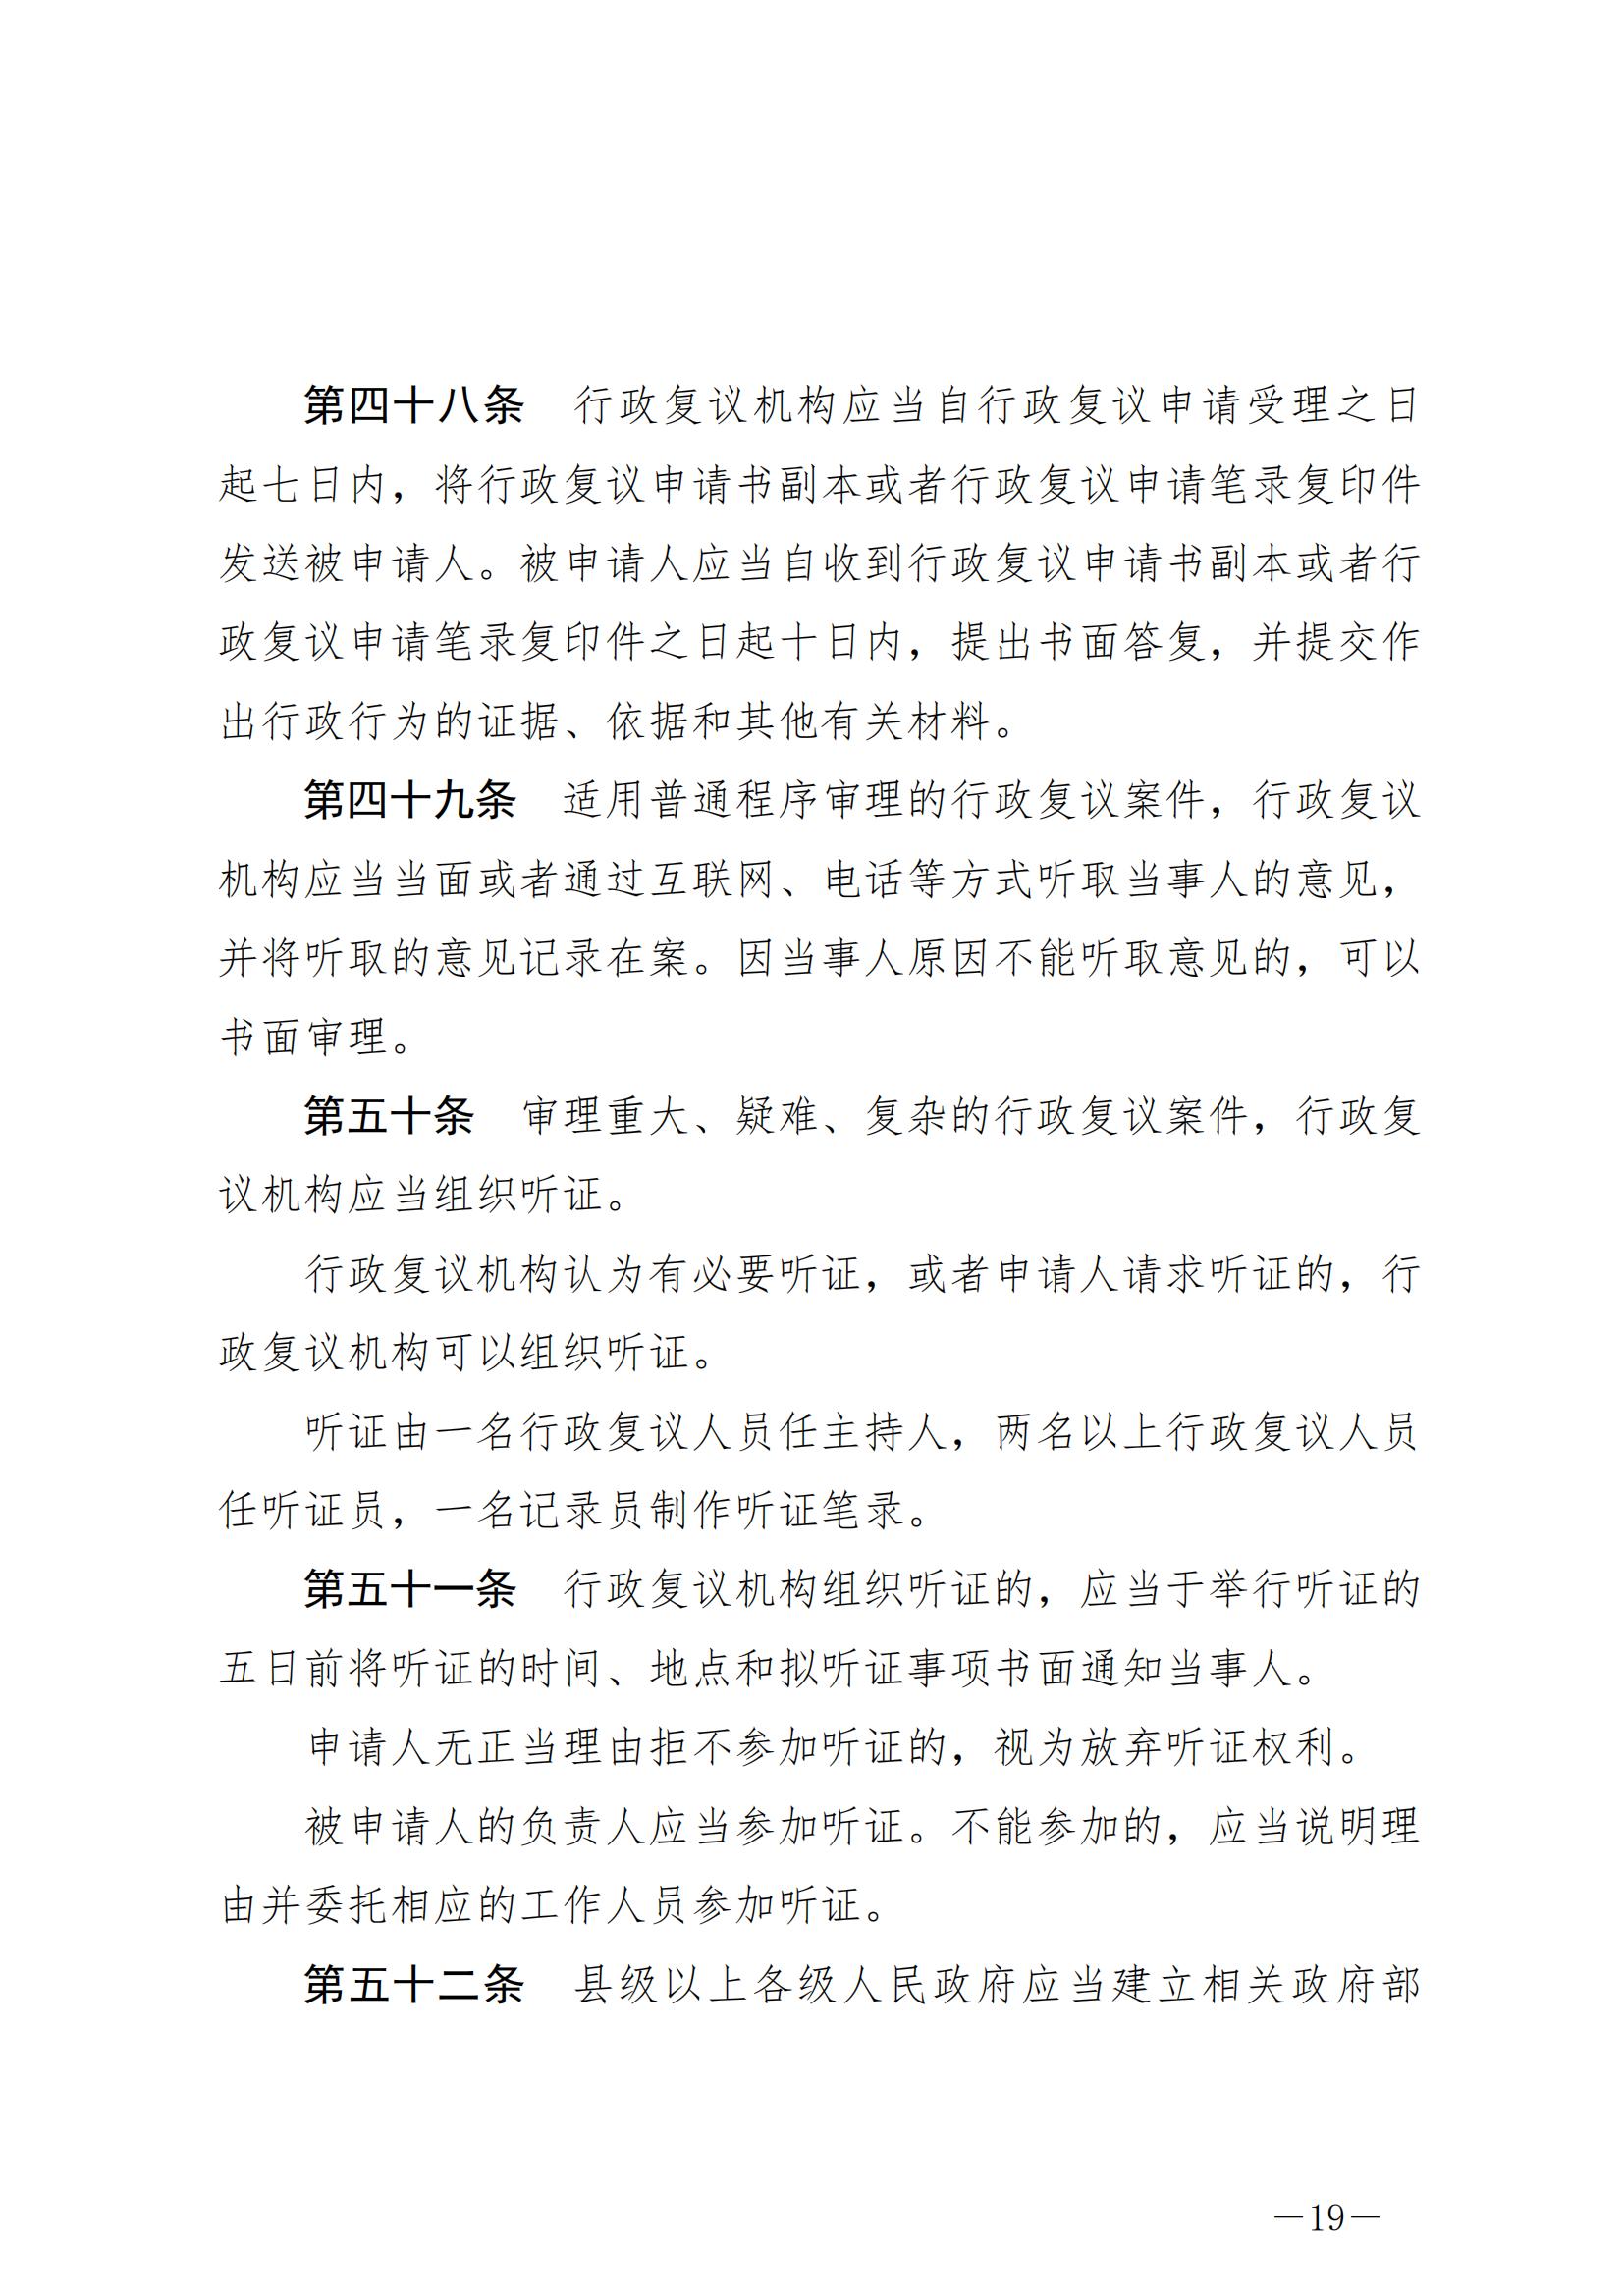 《中华人民共和国行政复议法》_20231204154310_18.jpg